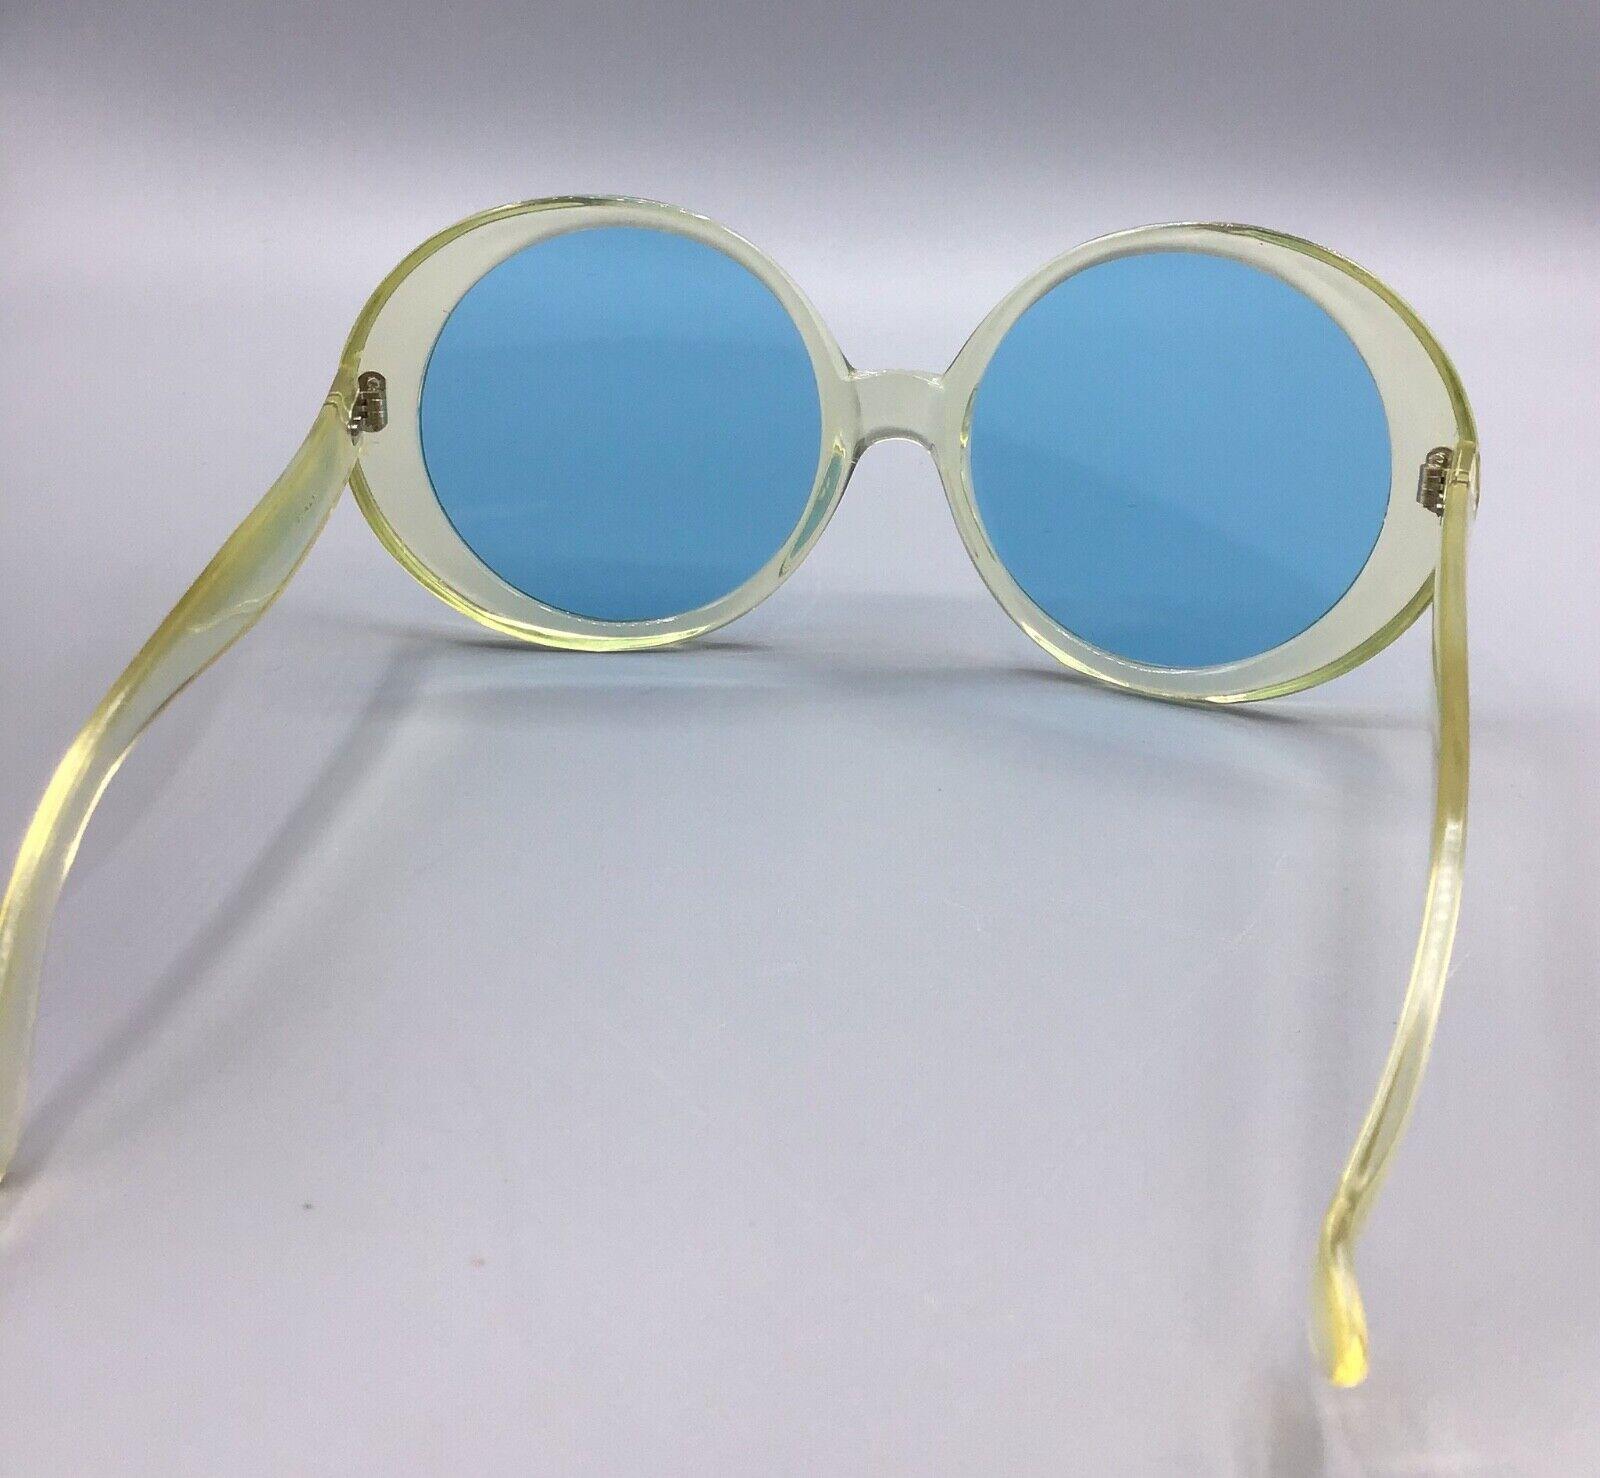 Italy occhiale da sole Sunglasses vintage light blue lens lunettes sonnenbrillen